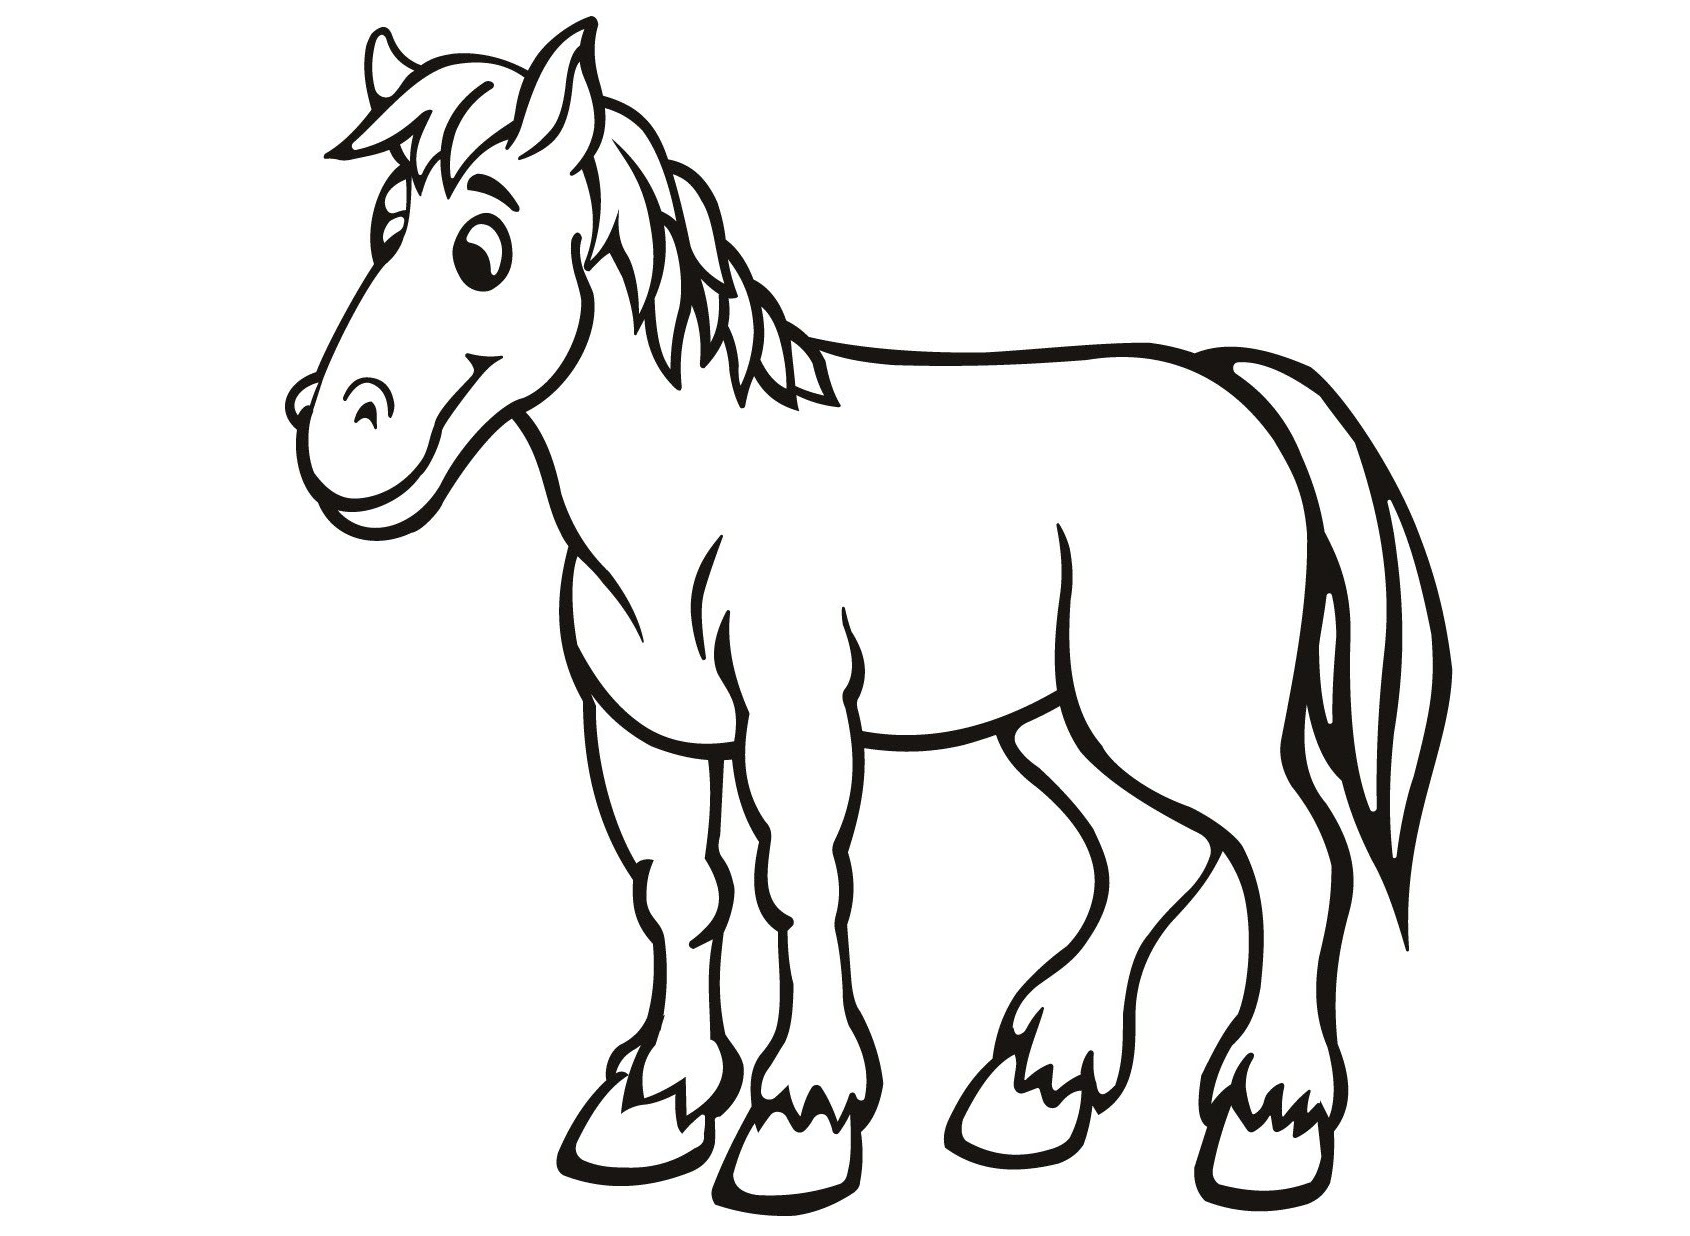 Vẽ và tô màu con ngựa kỳ lân dễ thương | Dạy bé vẽ | Dạy bé tô màu |  Unicorn Halaman Mewarnai - YouTube